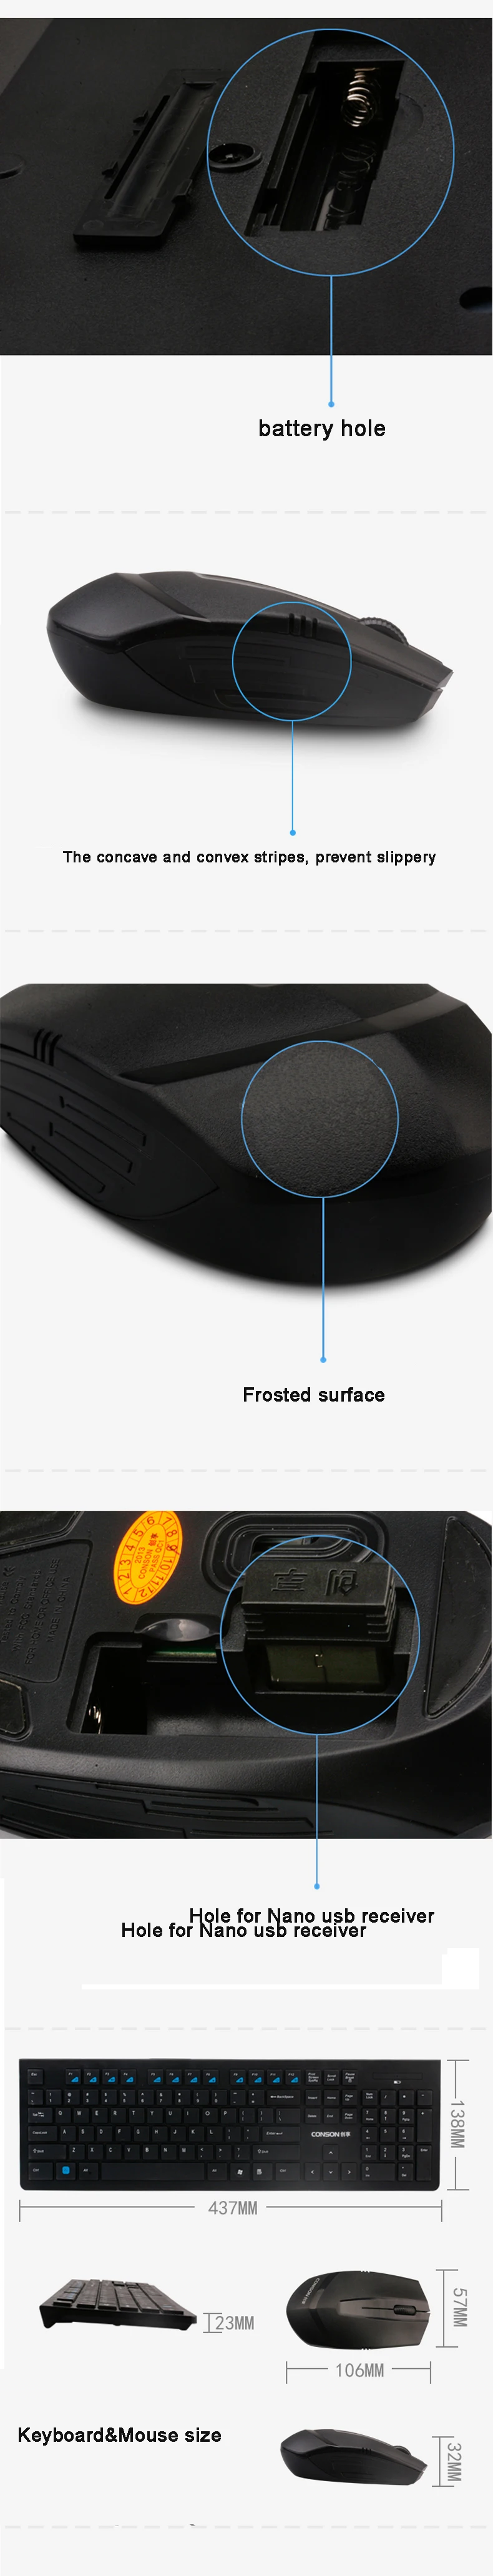 Ультра тонкий 2,4G Беспроводная клавиатура+ мышь нано приемник портативная игровая клавиатура мышь комбо долгий срок службы батареи для настольного компьютера/ПК